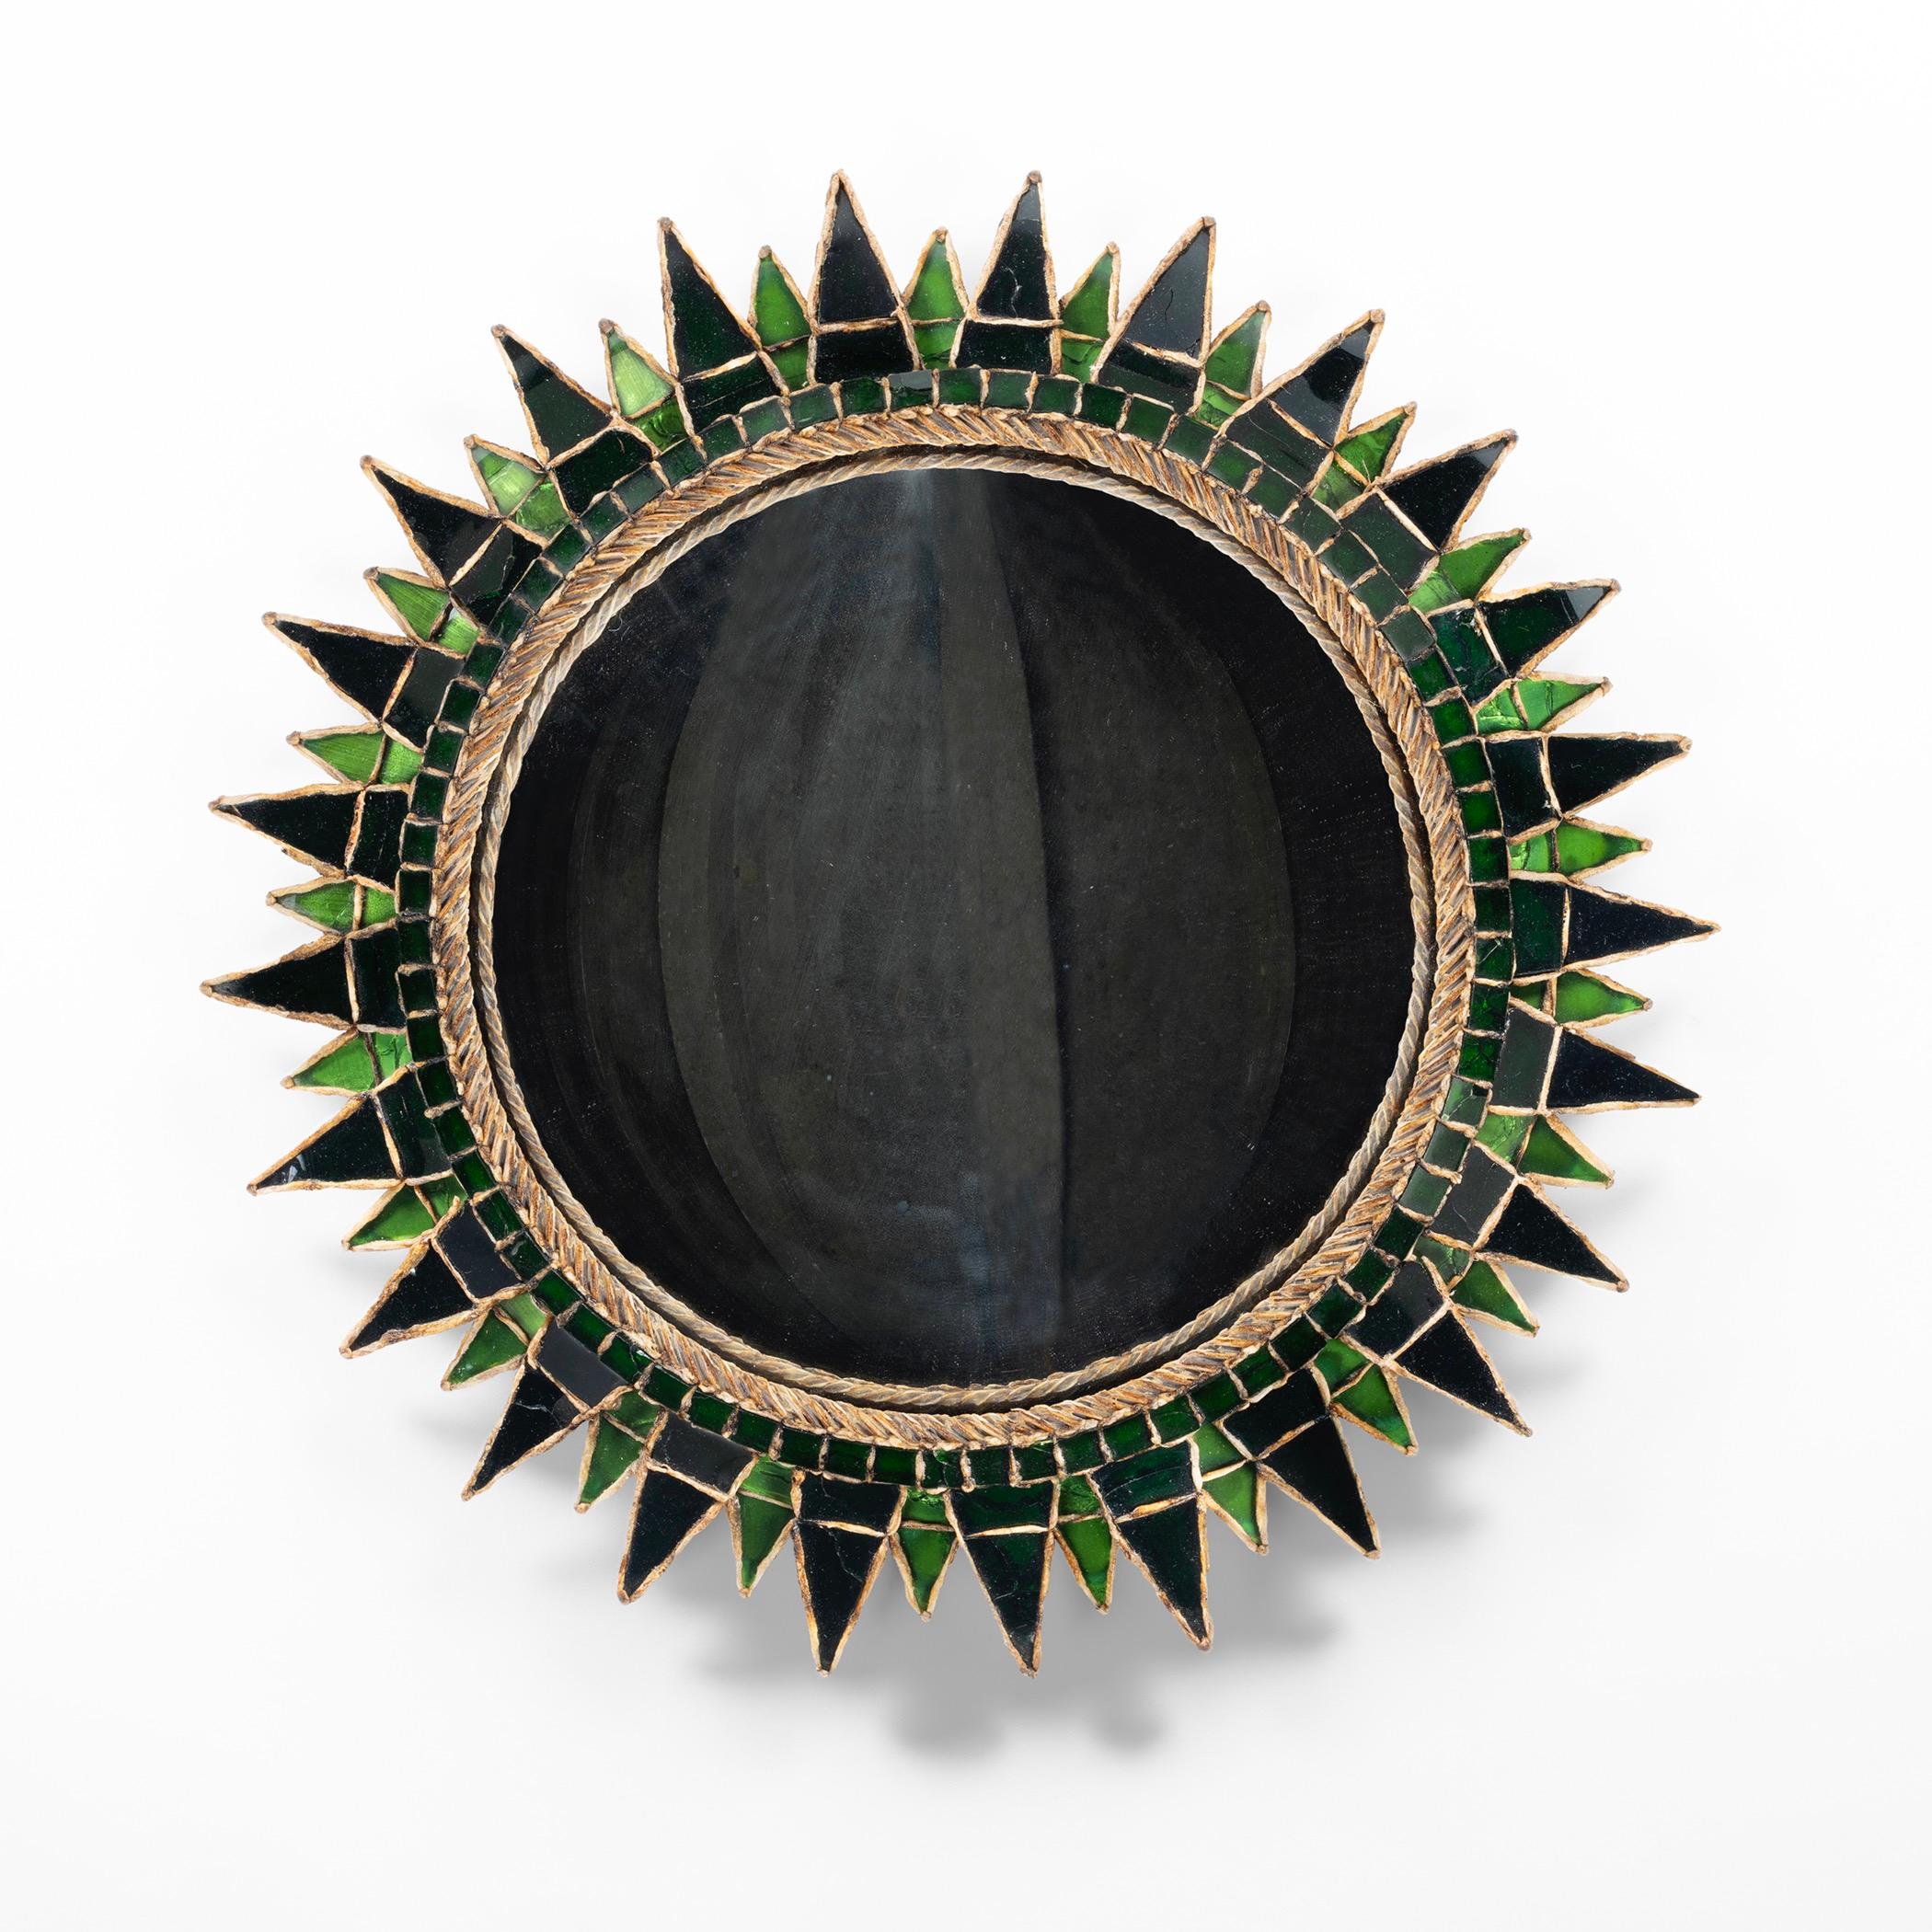 Soleil à pointes de Line Vautrin - Miroir en talosel incrusté d'une alternance de miroirs de couleur vert clair et vert foncé (forme numéro 3).

Soleil à pointes, miroir en talosel incrusté d'une alternance de miroirs de couleur vert clair et vert